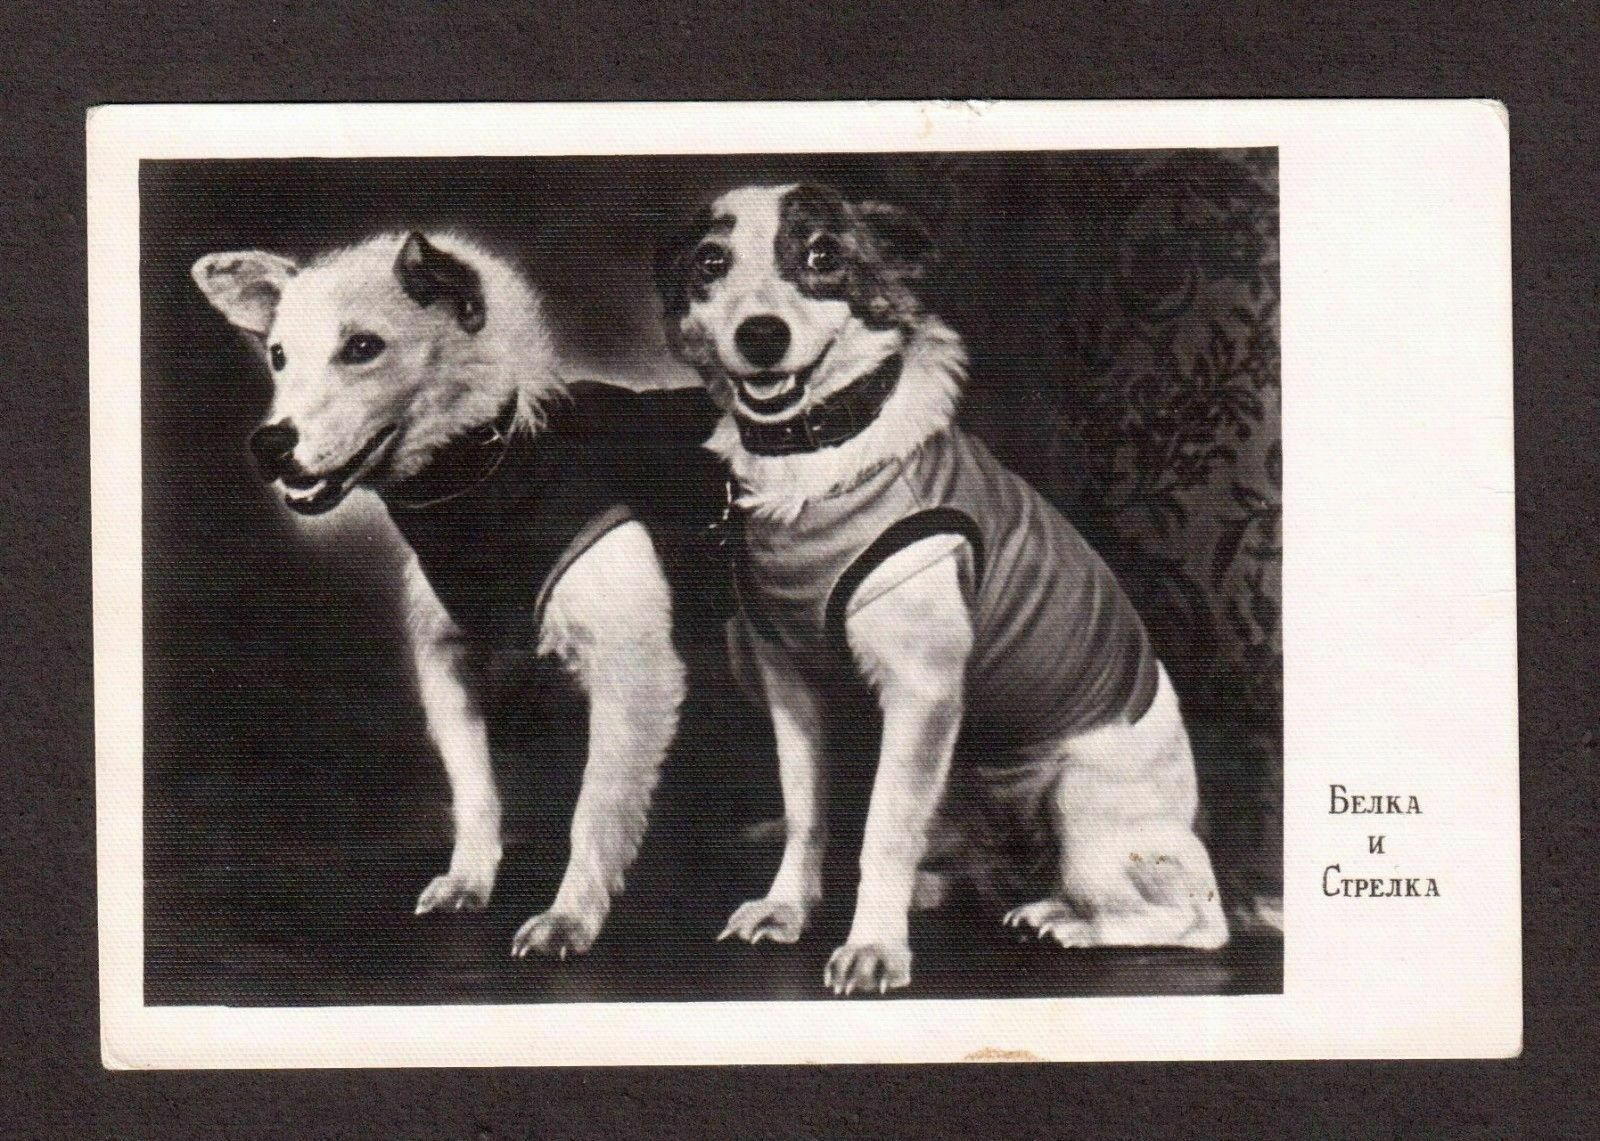 Две собаки в космосе. Полет белки и стрелки в космос. Белка и стрелка советские собаки-космонавты. Собака белка и стрелка 1960. Первые животные в космосе.